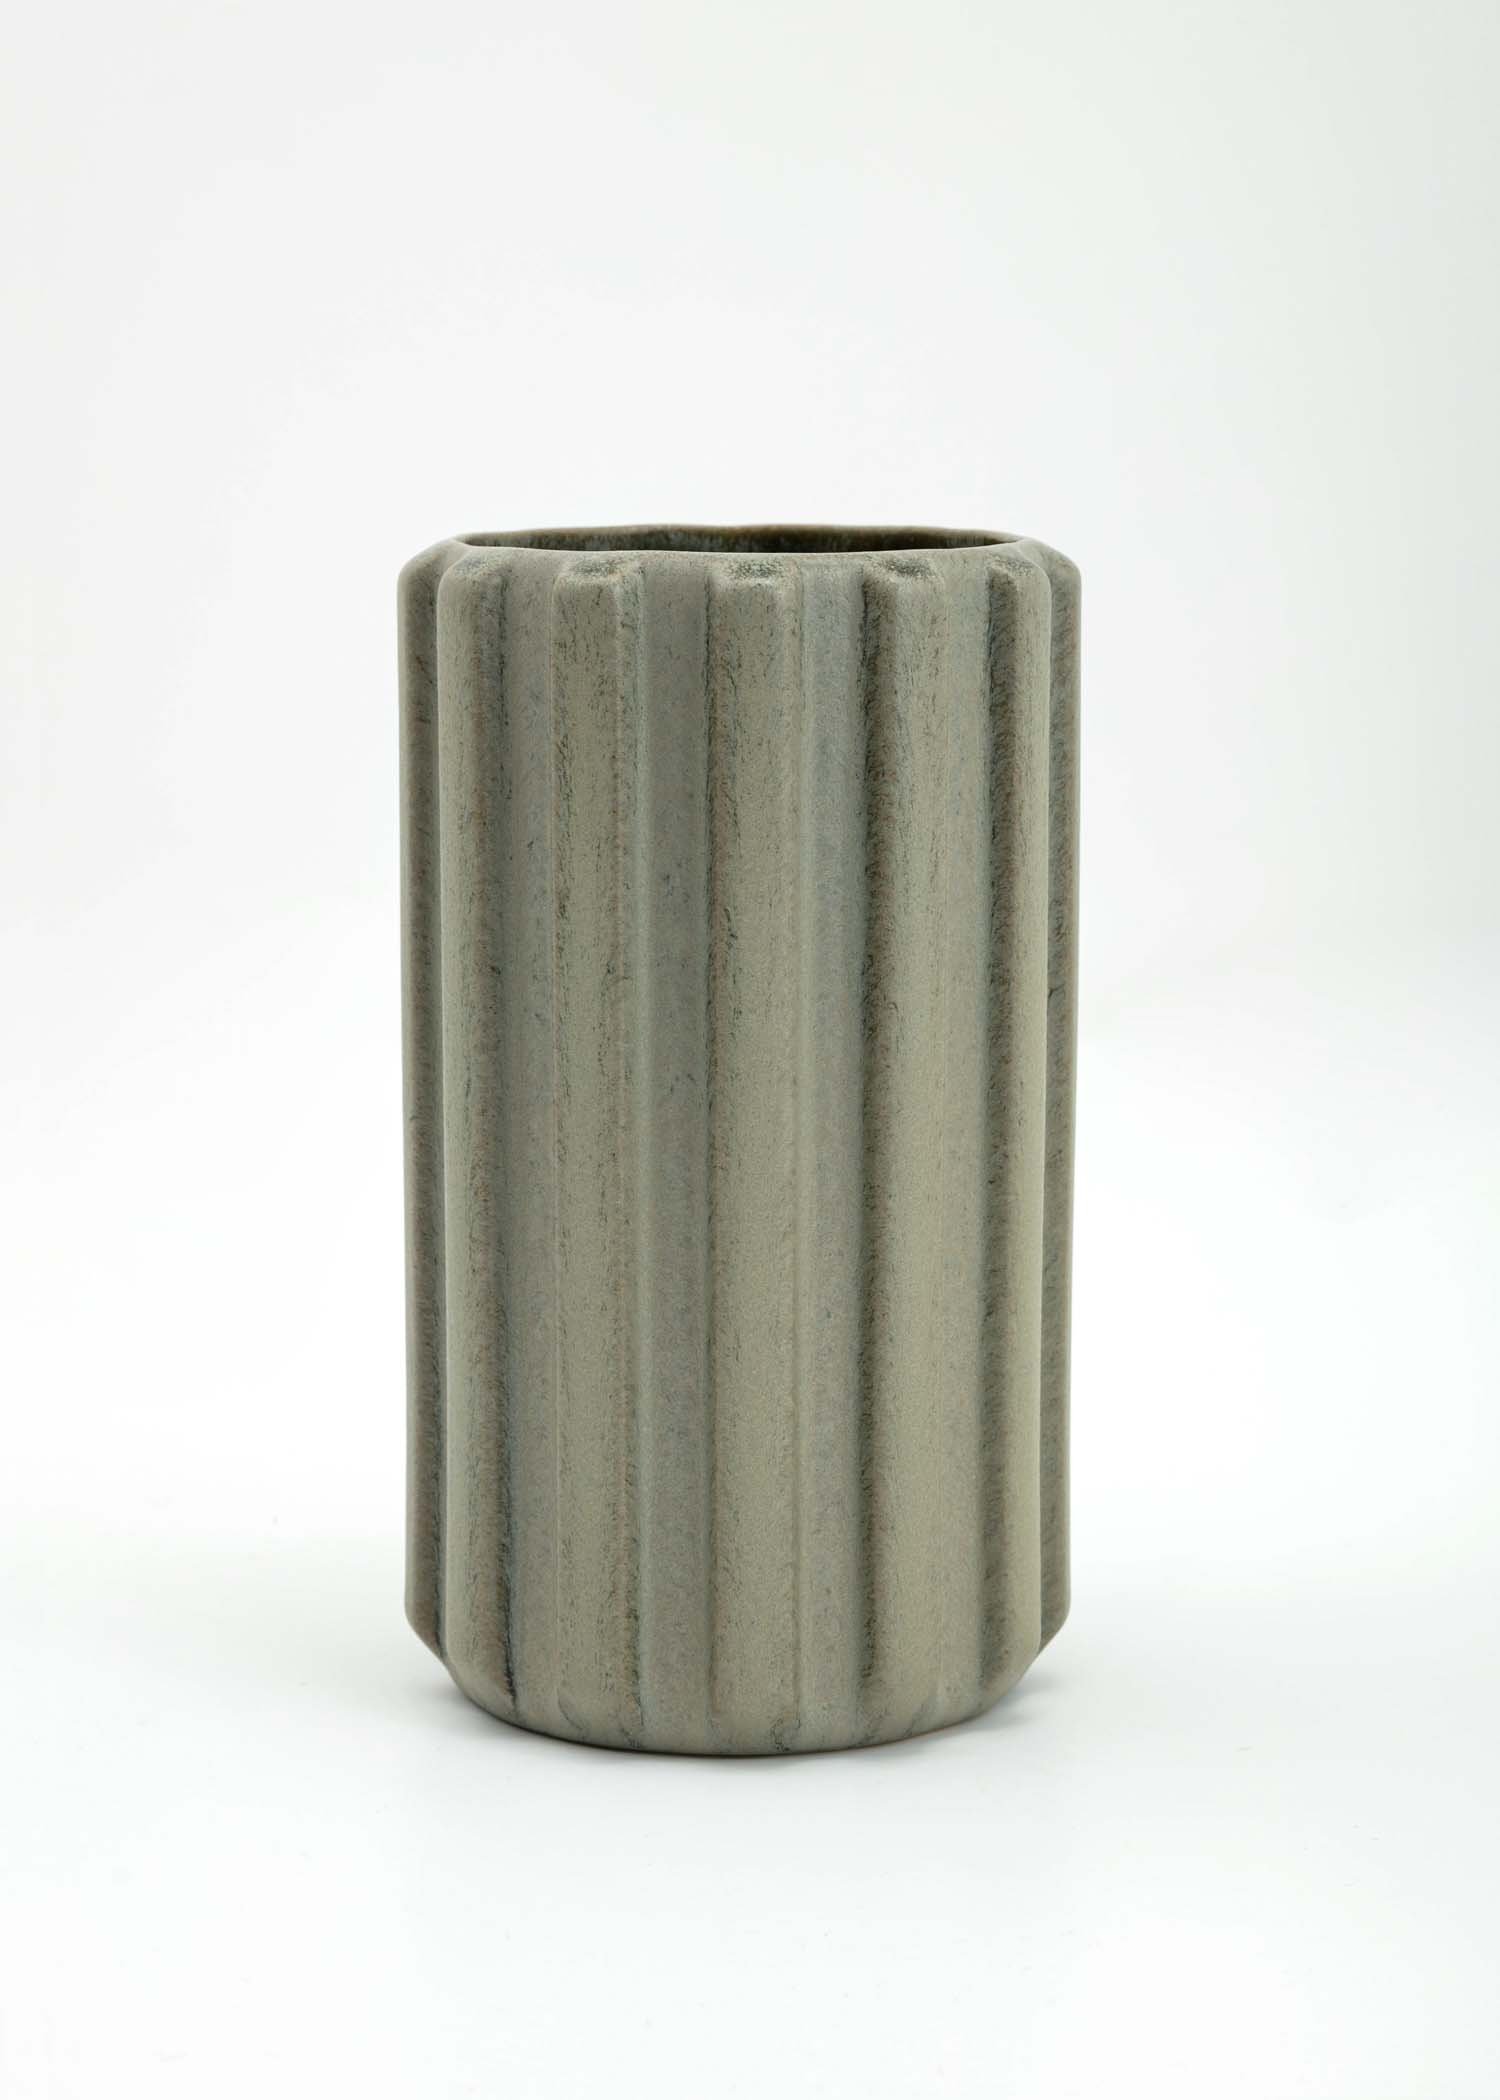 Tall stoneware vase